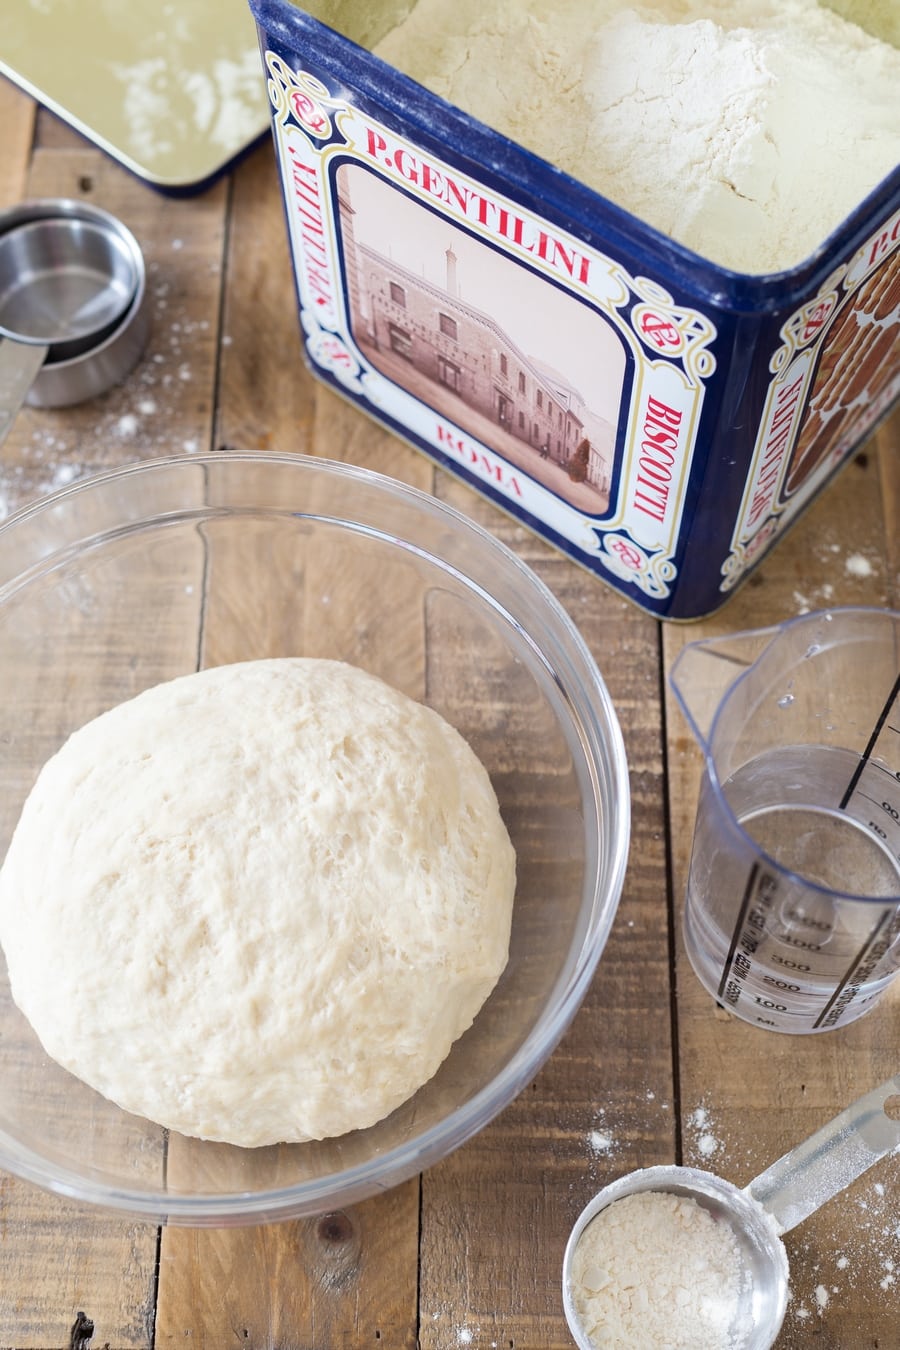 Pizza dough ball, water, flour.